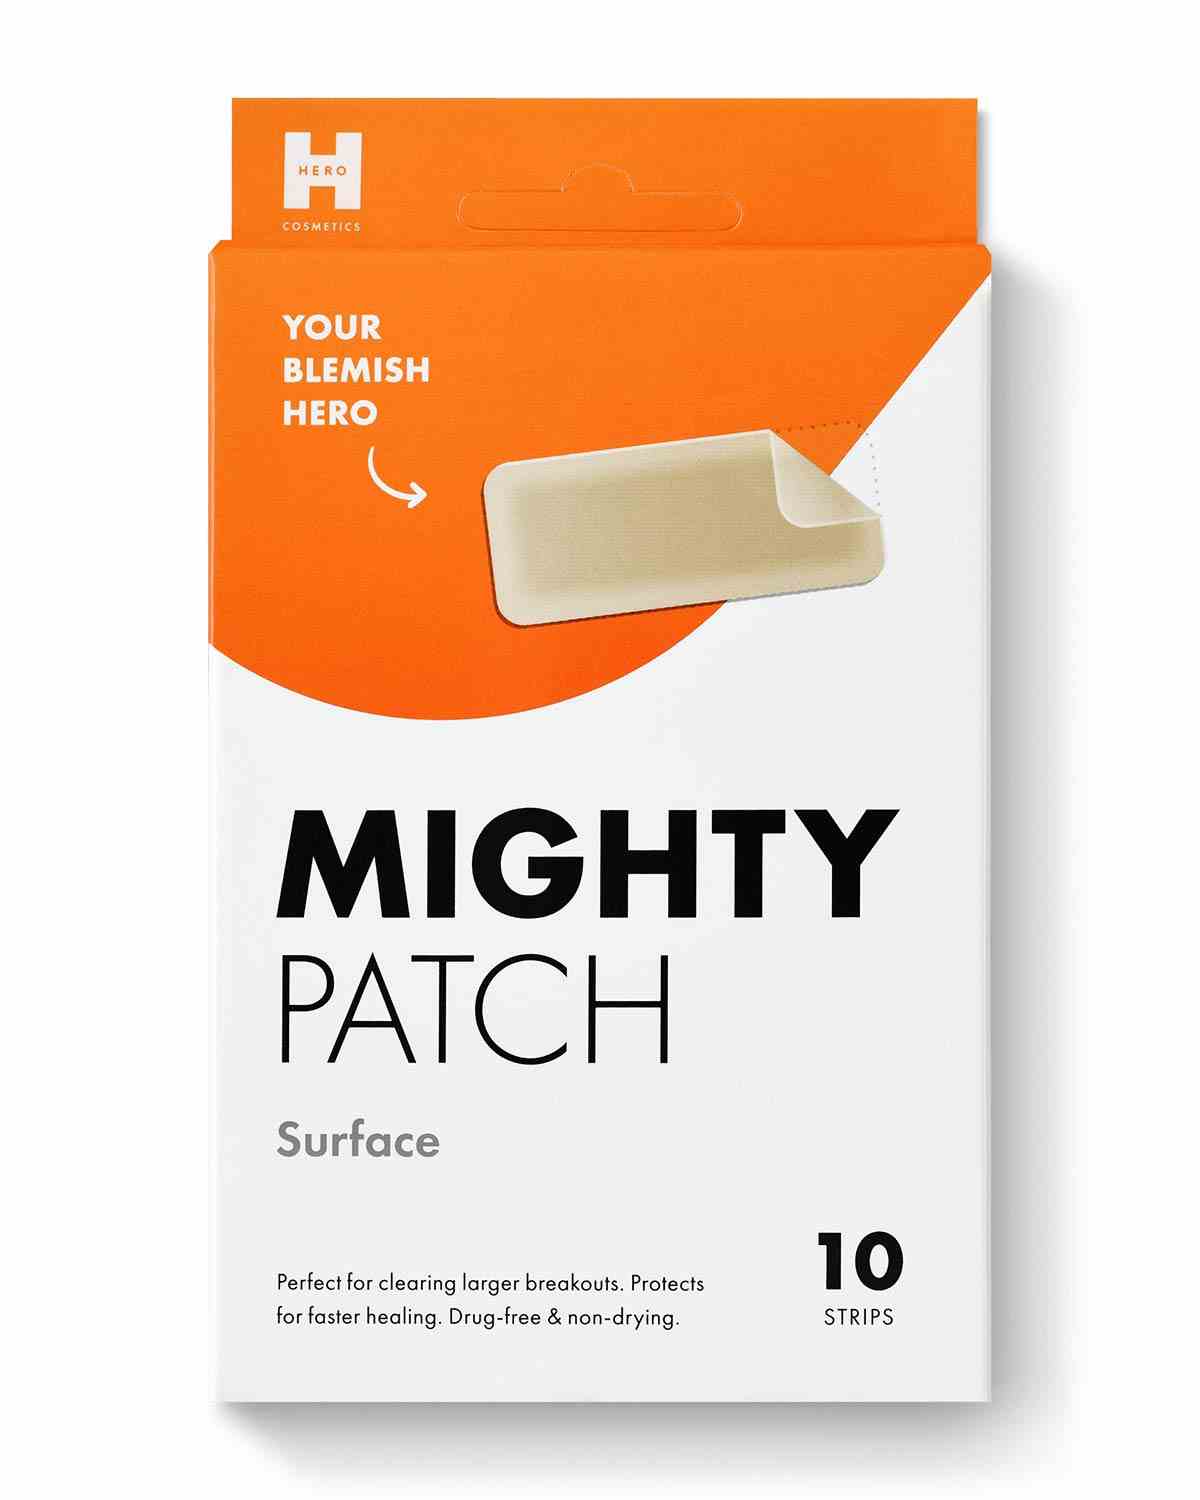 Eine orange-weiße Verpackungsbox für die Hero Cosmetics Mighty Patch Surface Akne-Hautpflege-Aufkleber auf weißem Hintergrund.